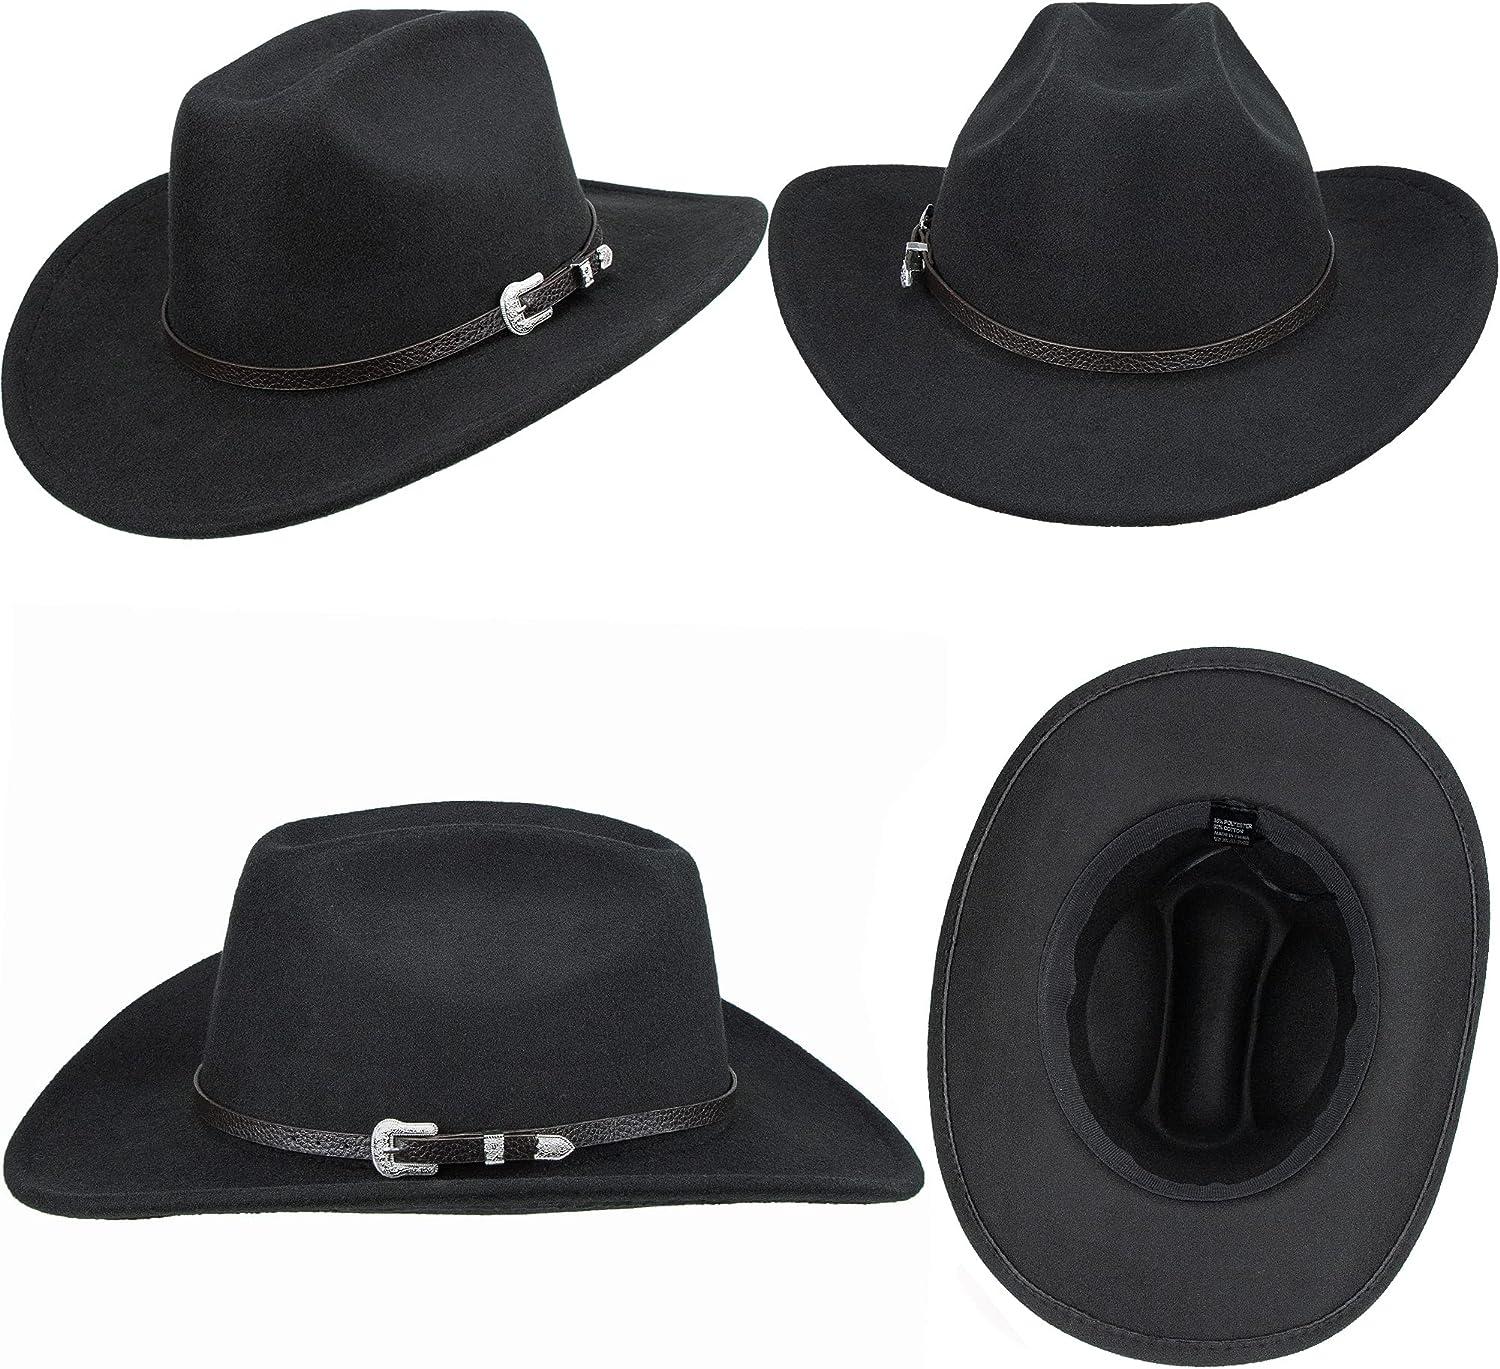 Pnellth Cowboy Hat Classic Vintage Hollow Out unisex Curled Edge Wide Brim Men Sun Hat Fishing Hat Black, Women's, Size: One Size